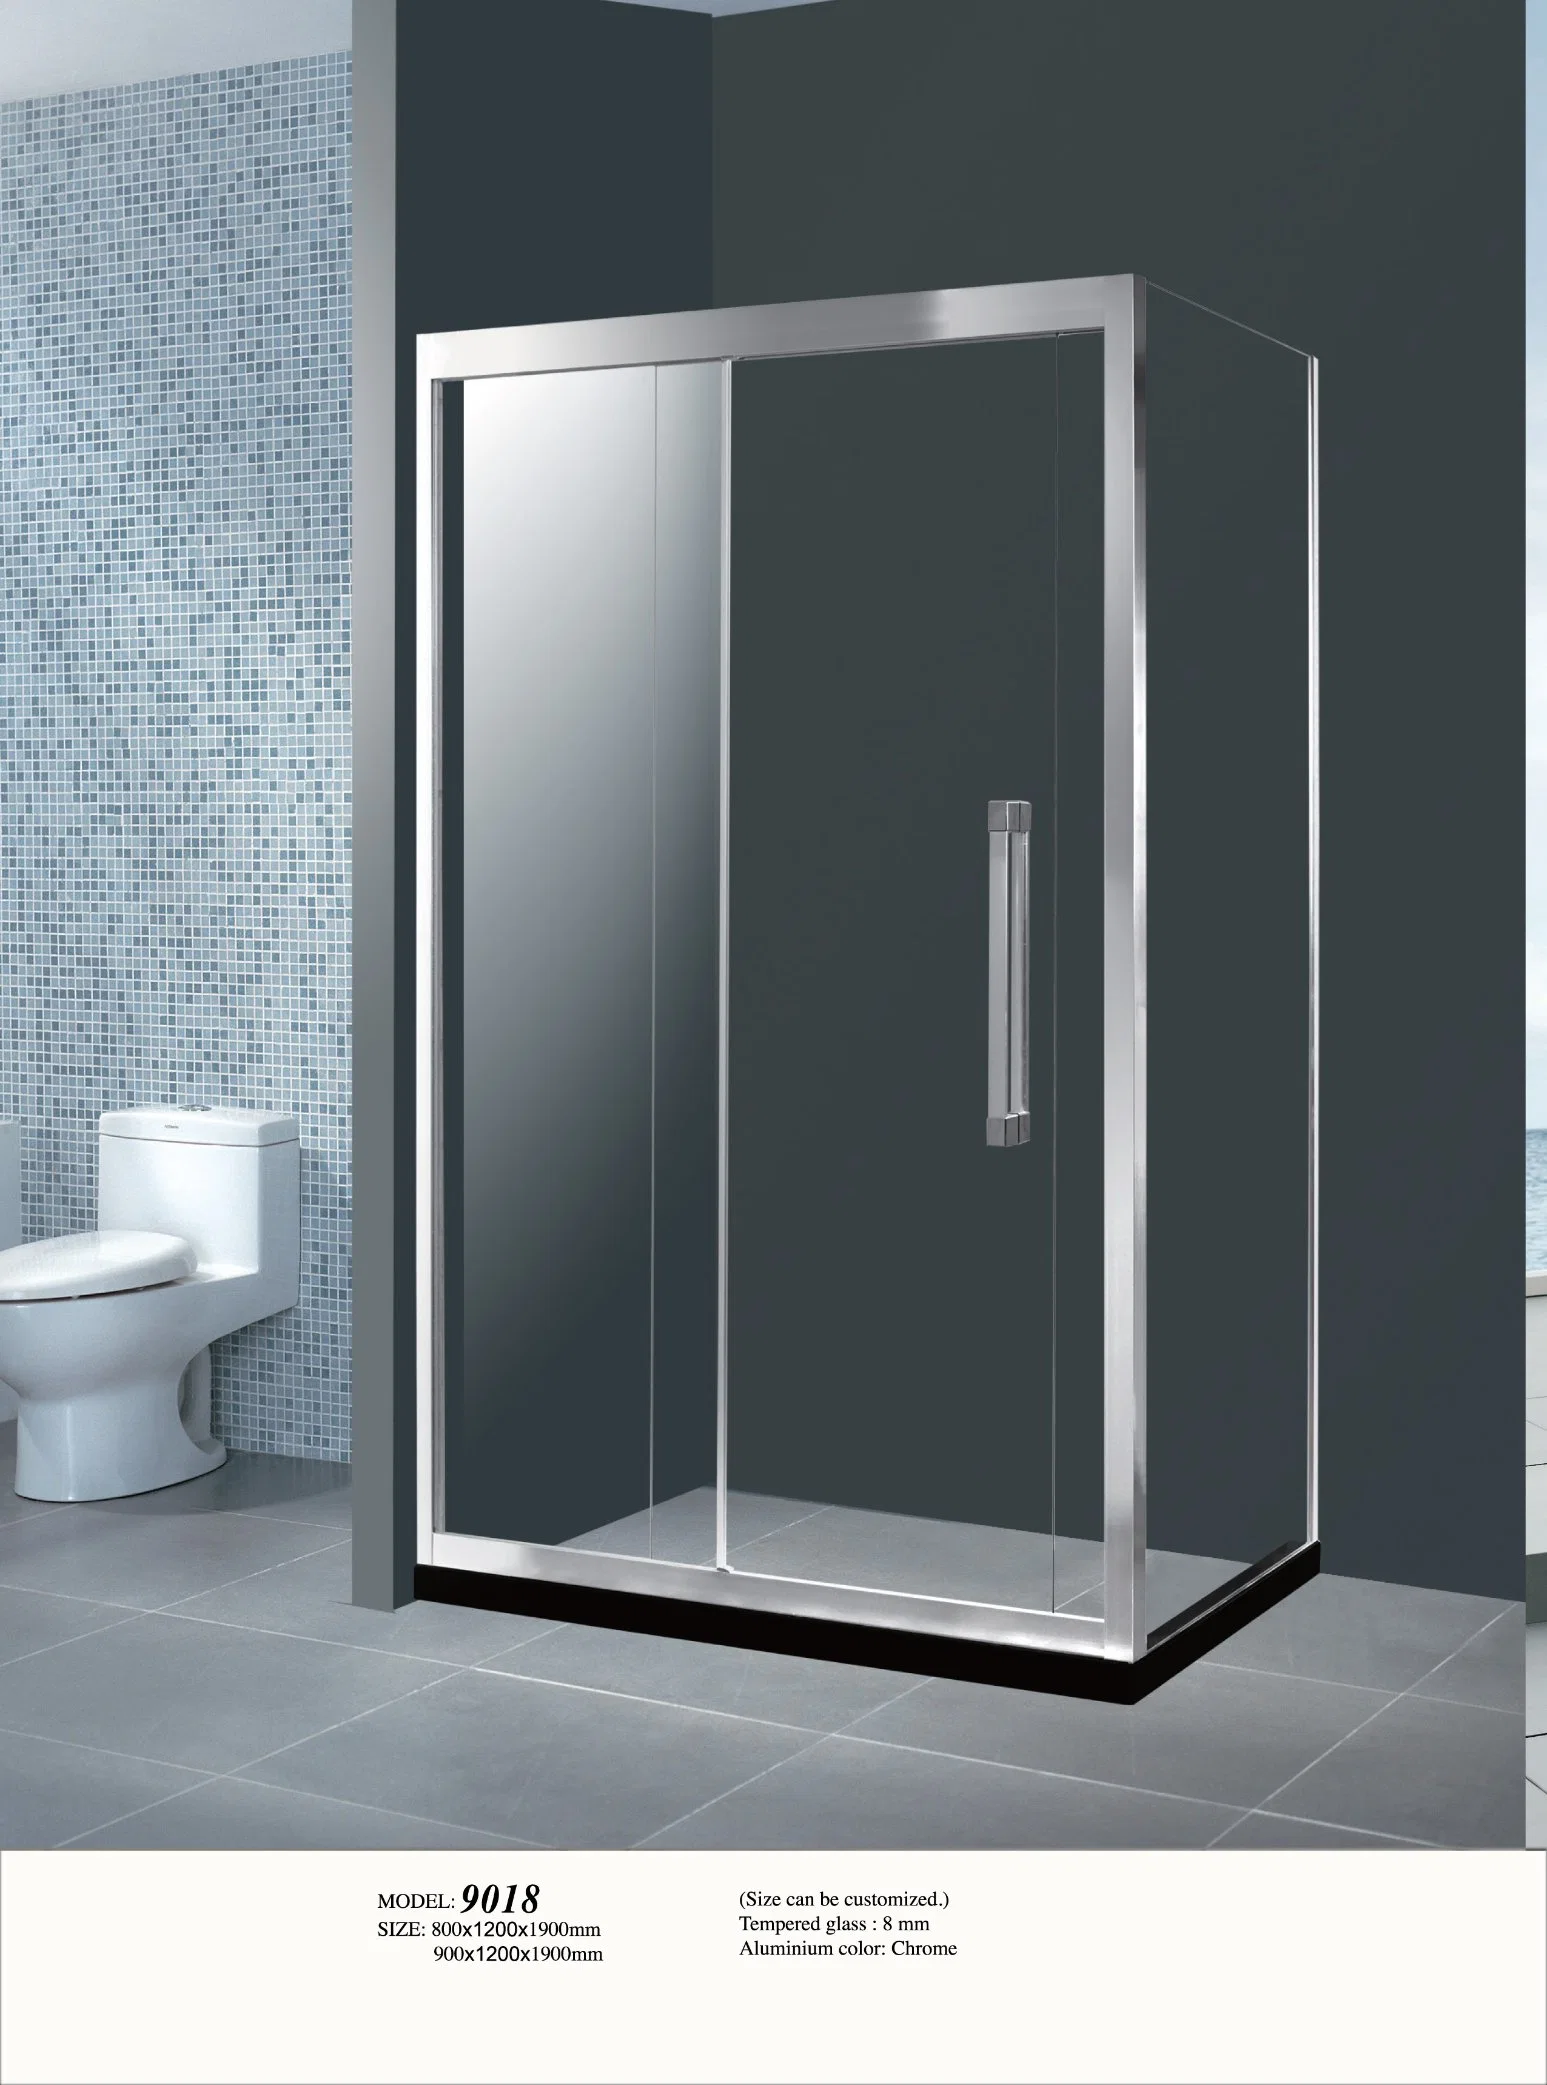 В ванной комнате есть душ черного цвета из закаленного стекла боковой сдвижной двери отсека